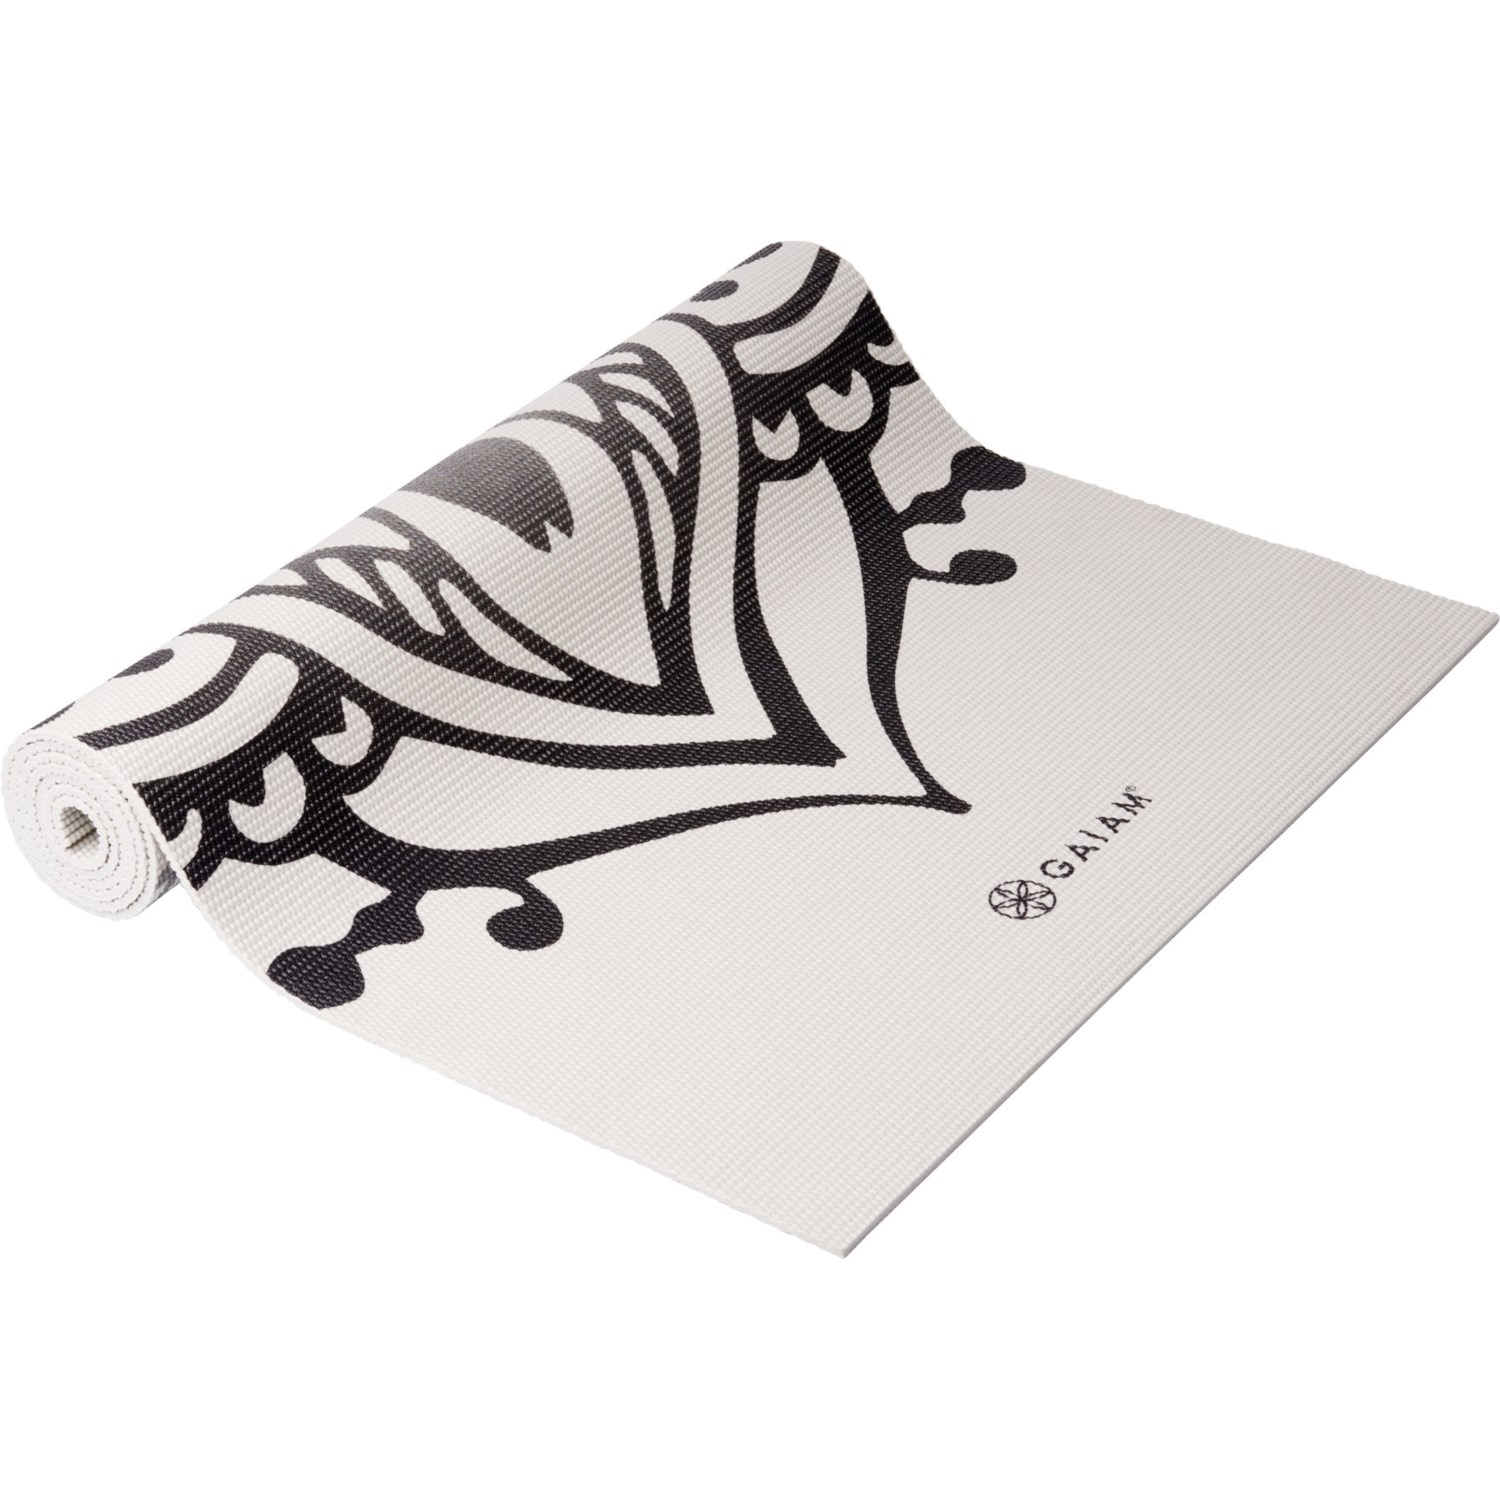 Gaiam Dovetail Printed Yoga Mat - 68x24”, 5 mm